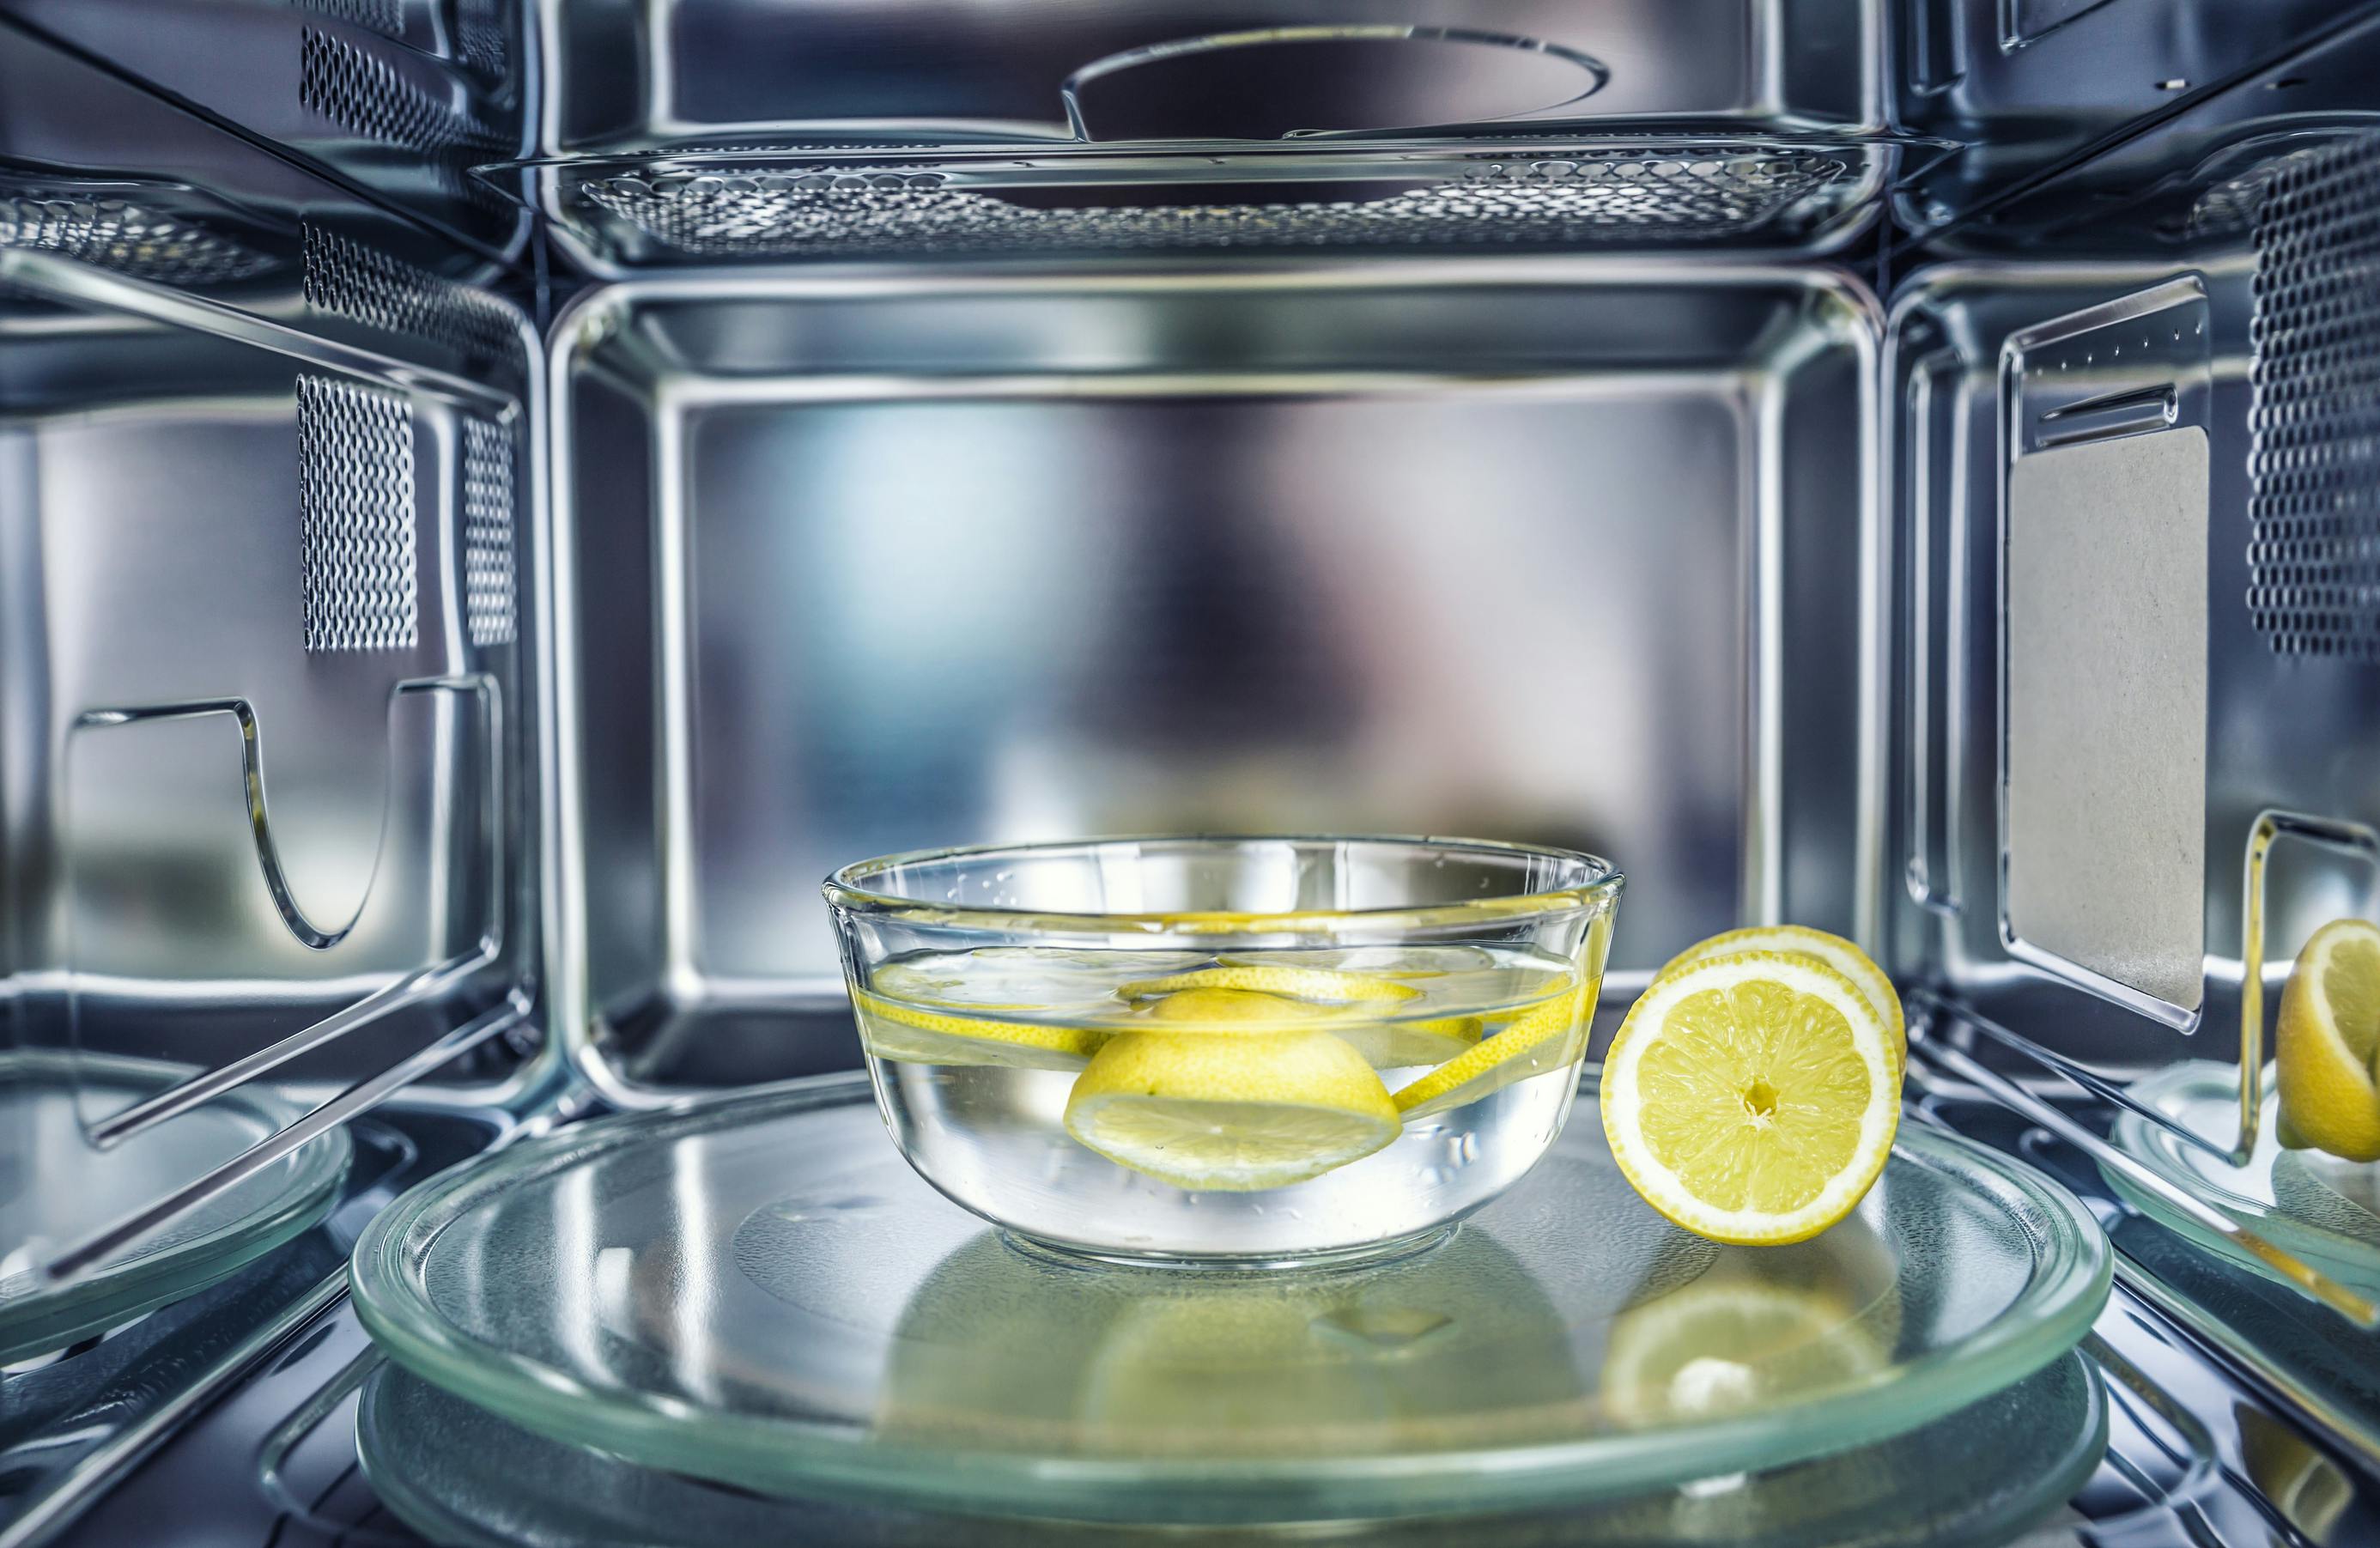 Bowl of lemons in a microwave